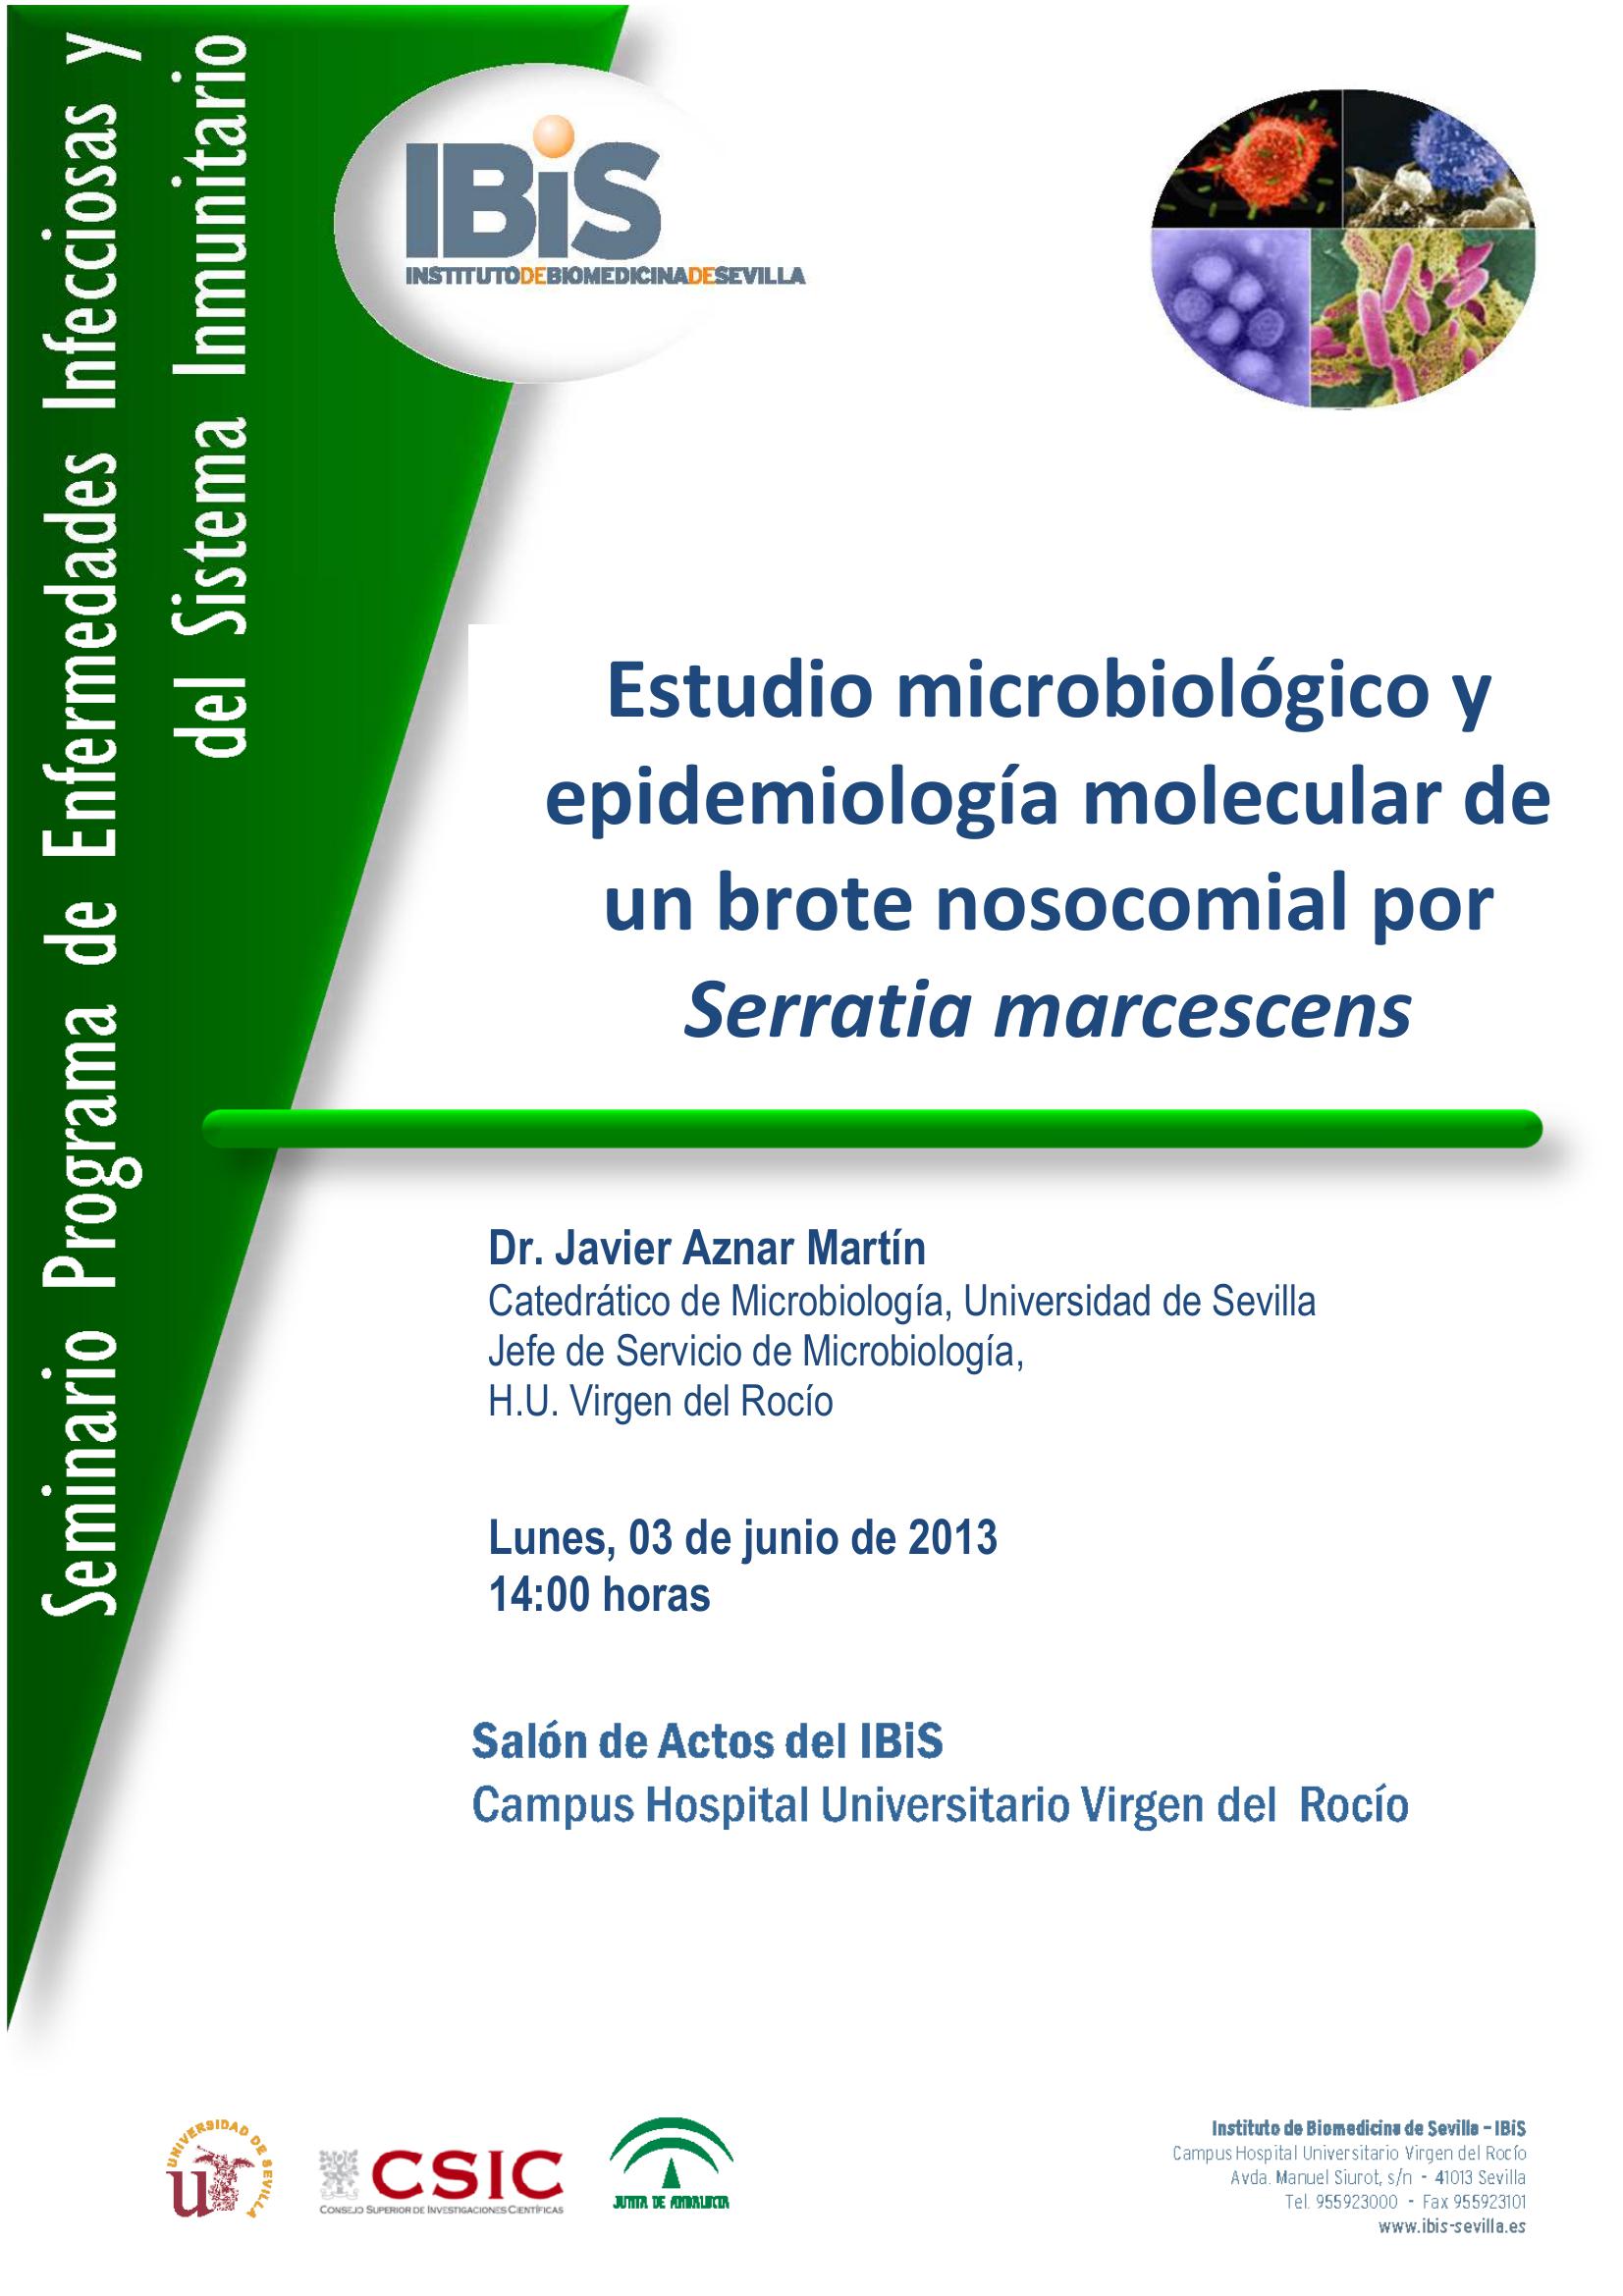 Poster: Estudio microbiológico y epidemiología molecular de un brote nosocomial por Serratia marcescens